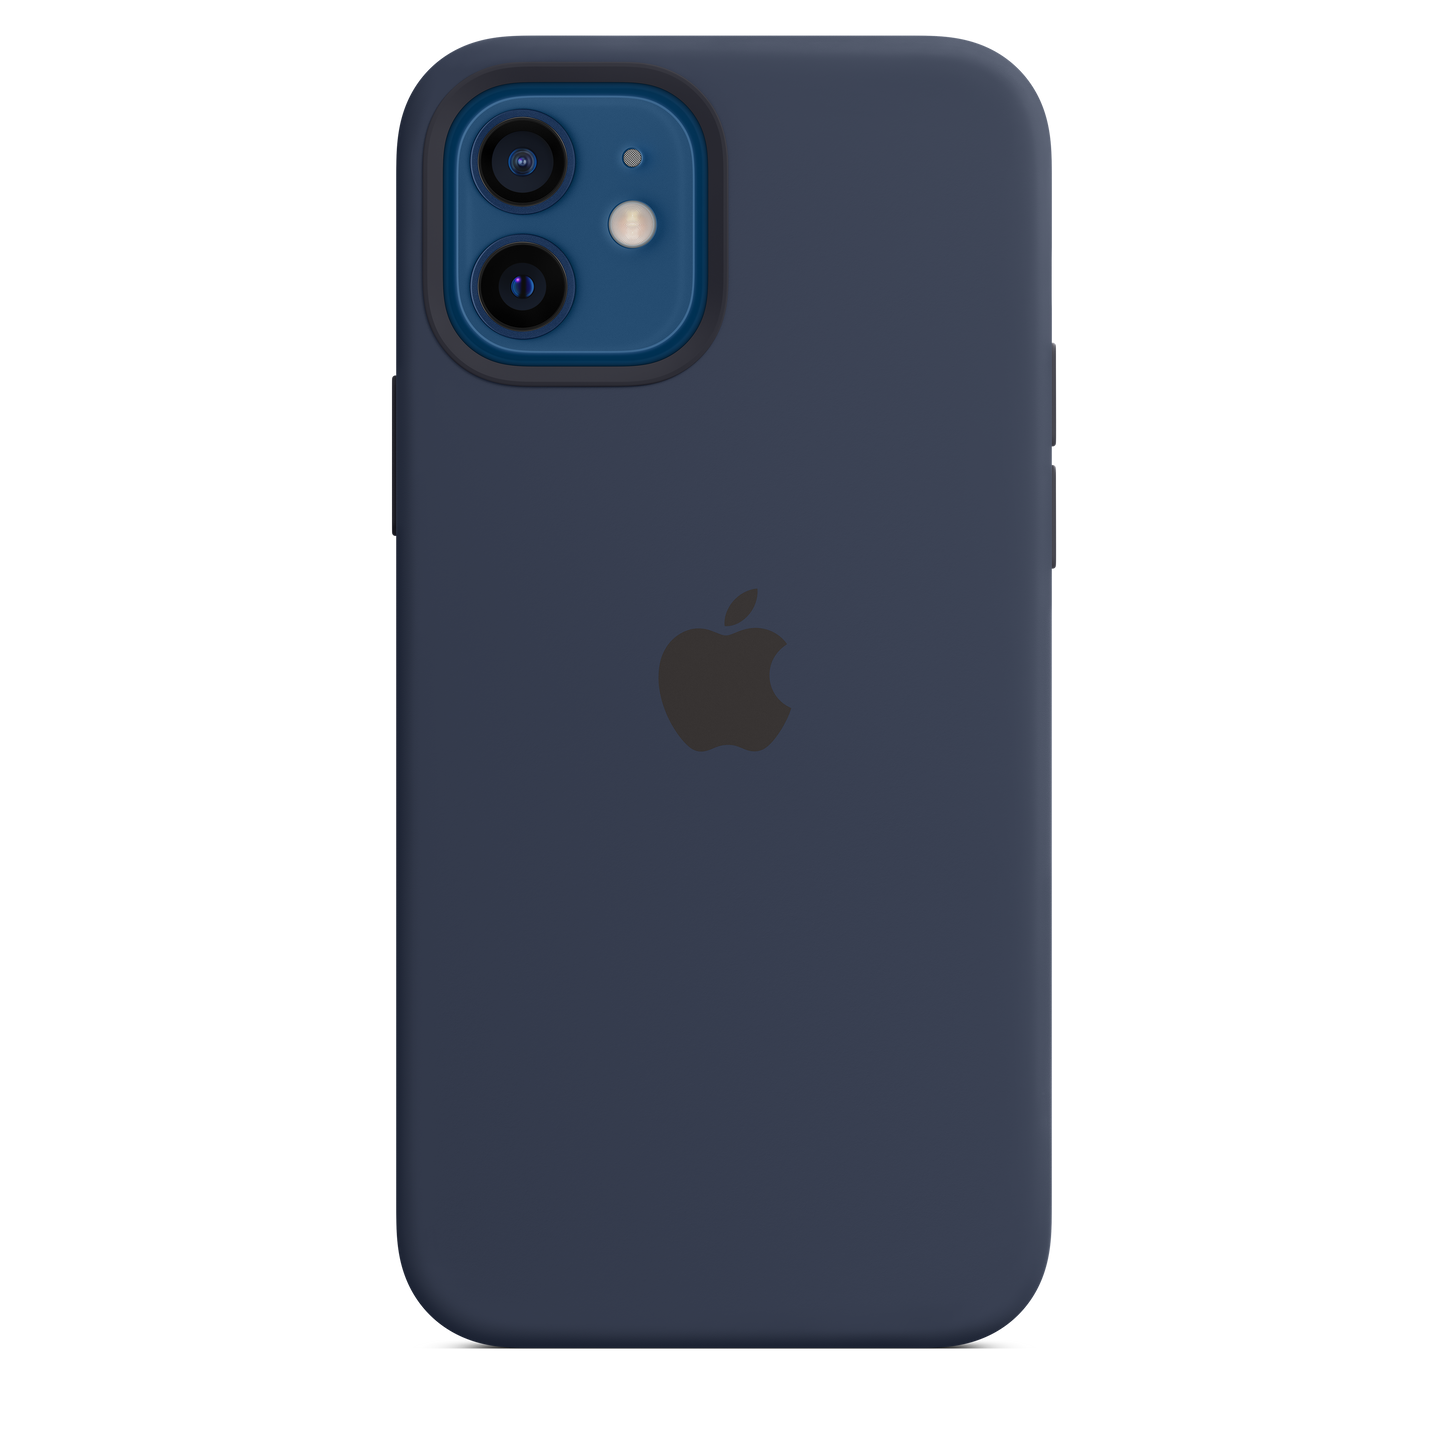 Funda de silicona con MagSafe para el iPhone 12 y iPhone 12 Pro, Azul marino intenso - Rossellimac